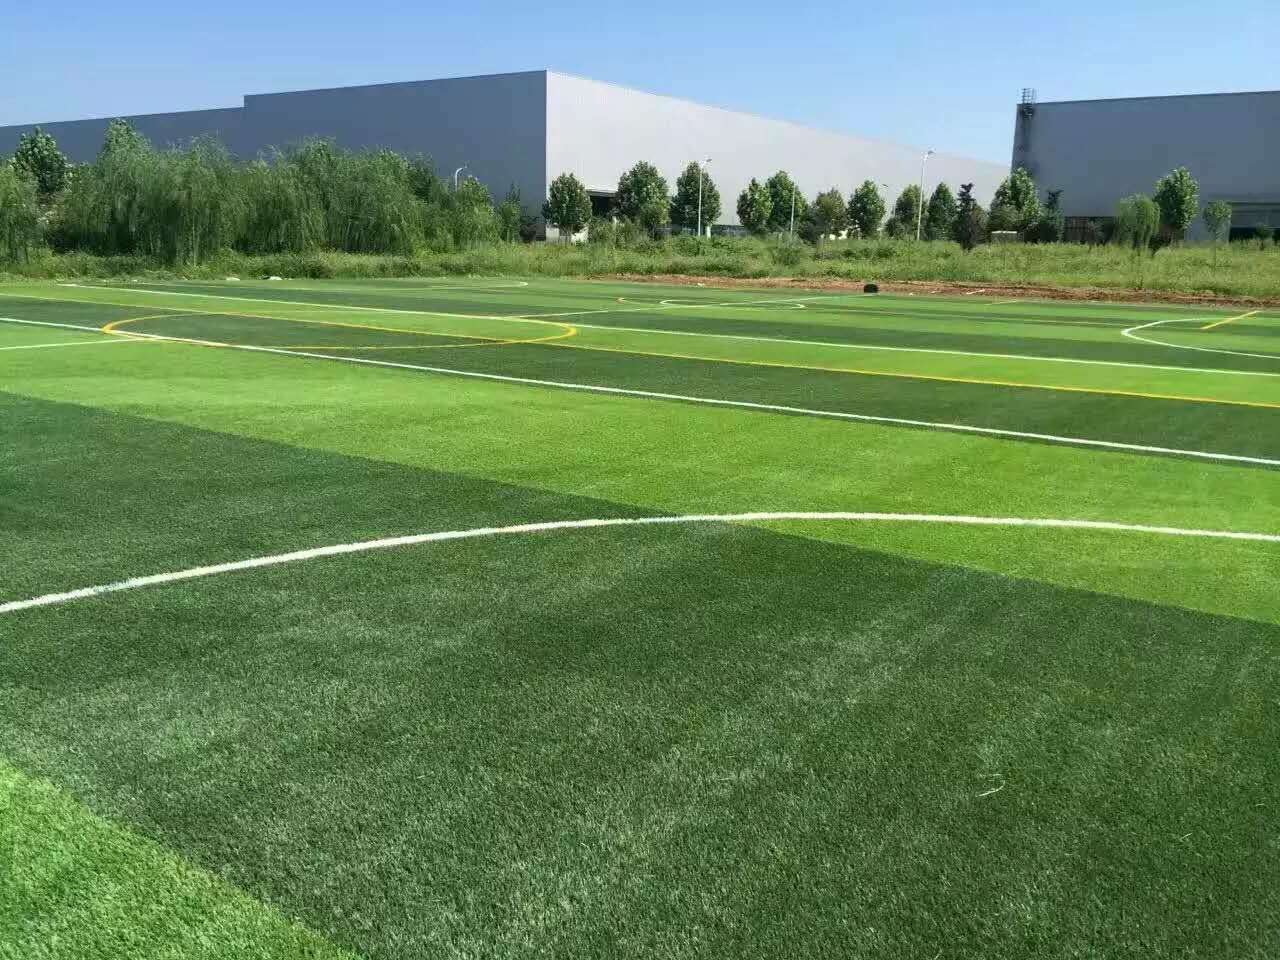 供应人造草坪足球场高密度环保新型材料厂家直销还包安装